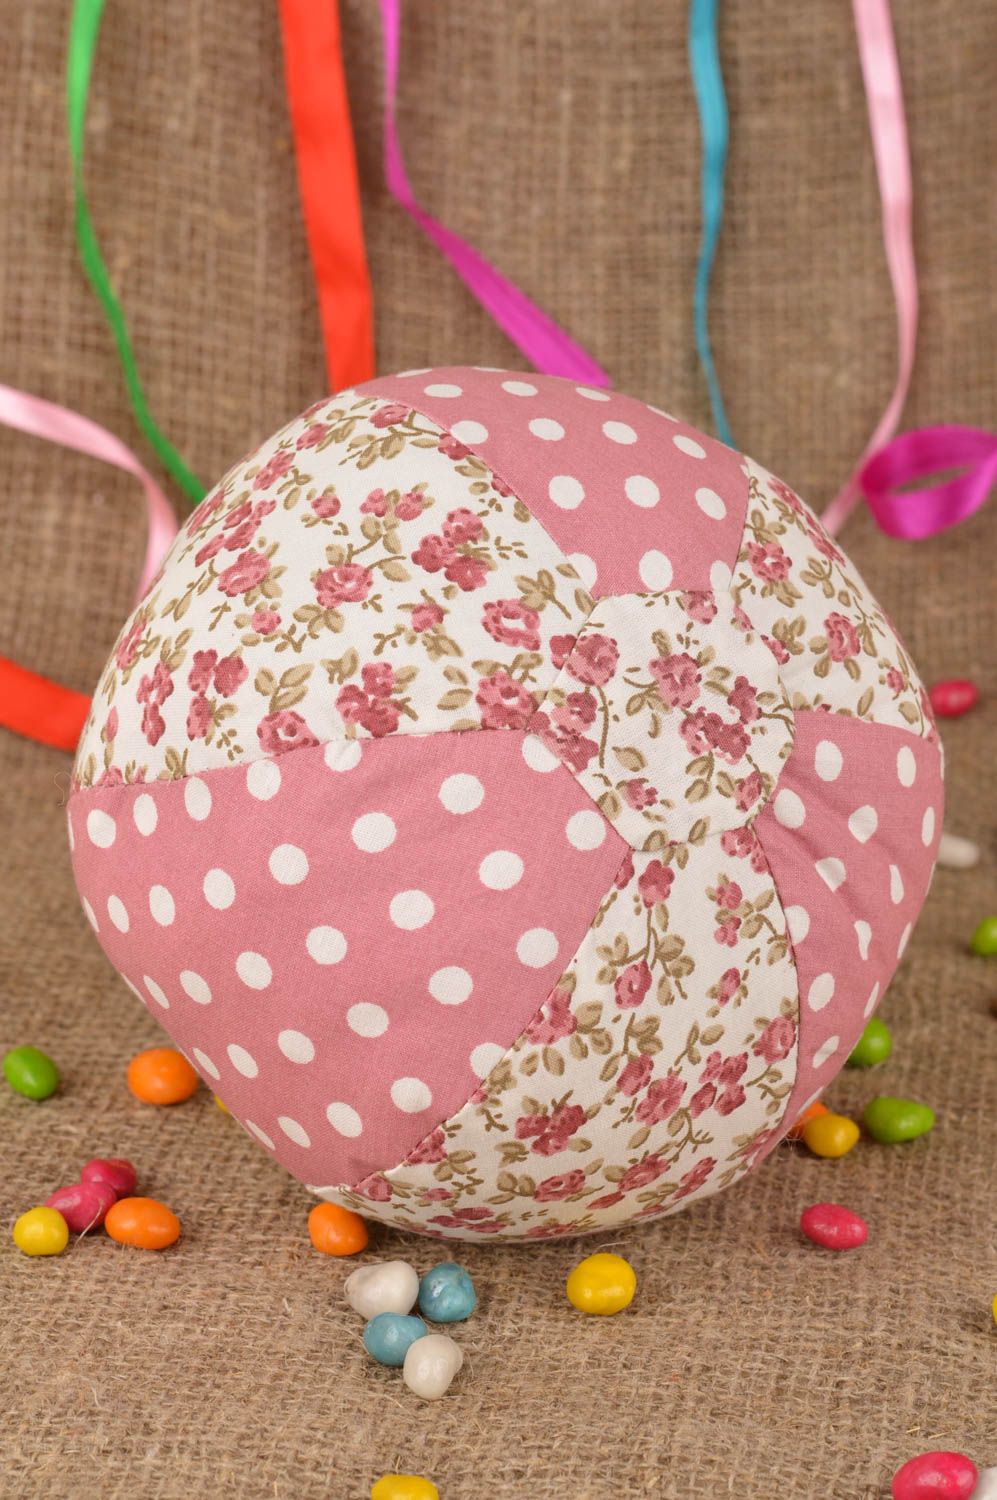 Красивая текстильная игрушка в виде розового мячика из ткани для детей хэнд мэйд фото 1